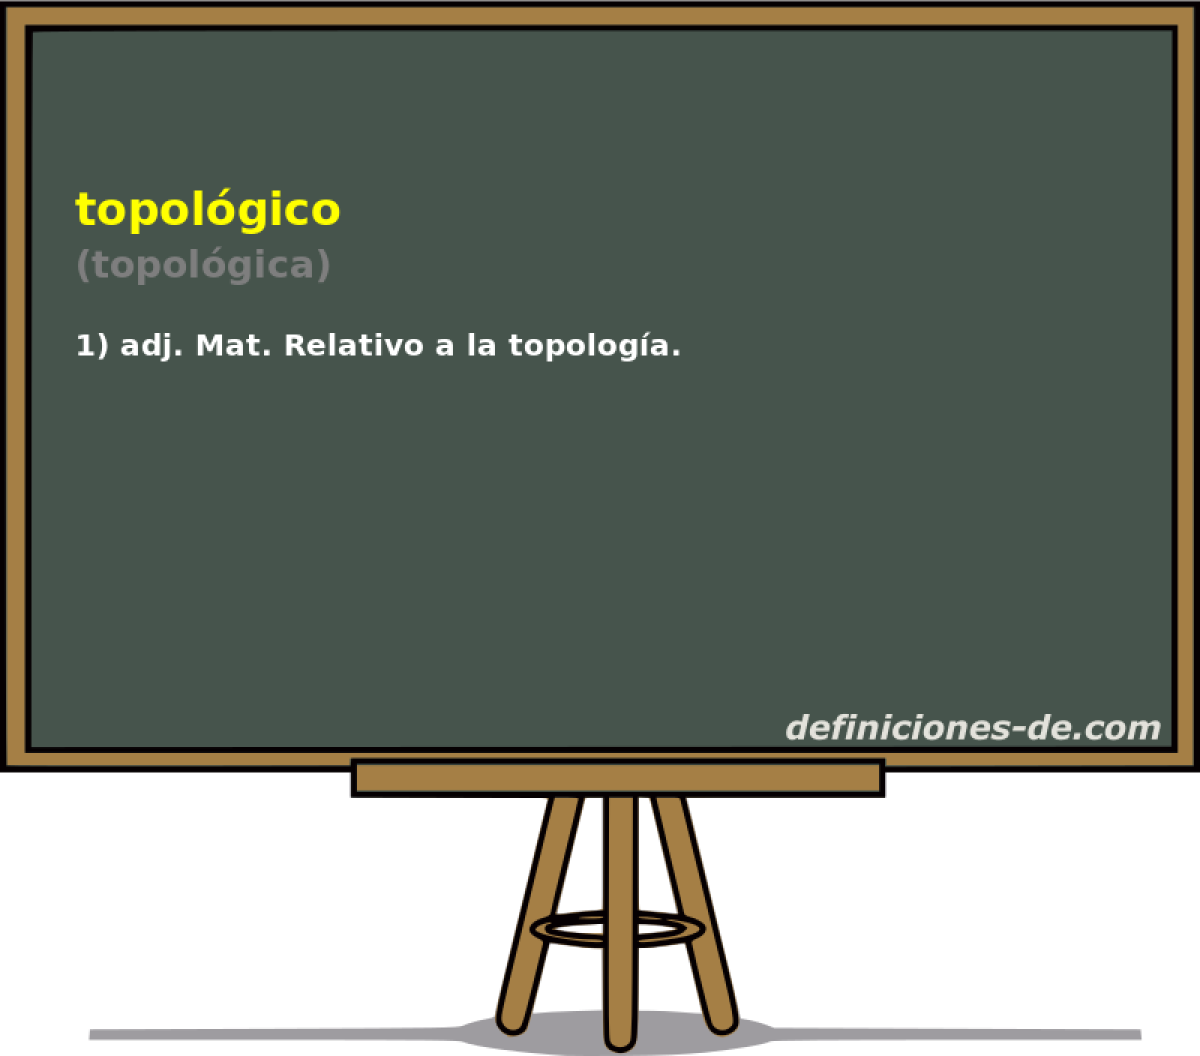 topolgico (topolgica)